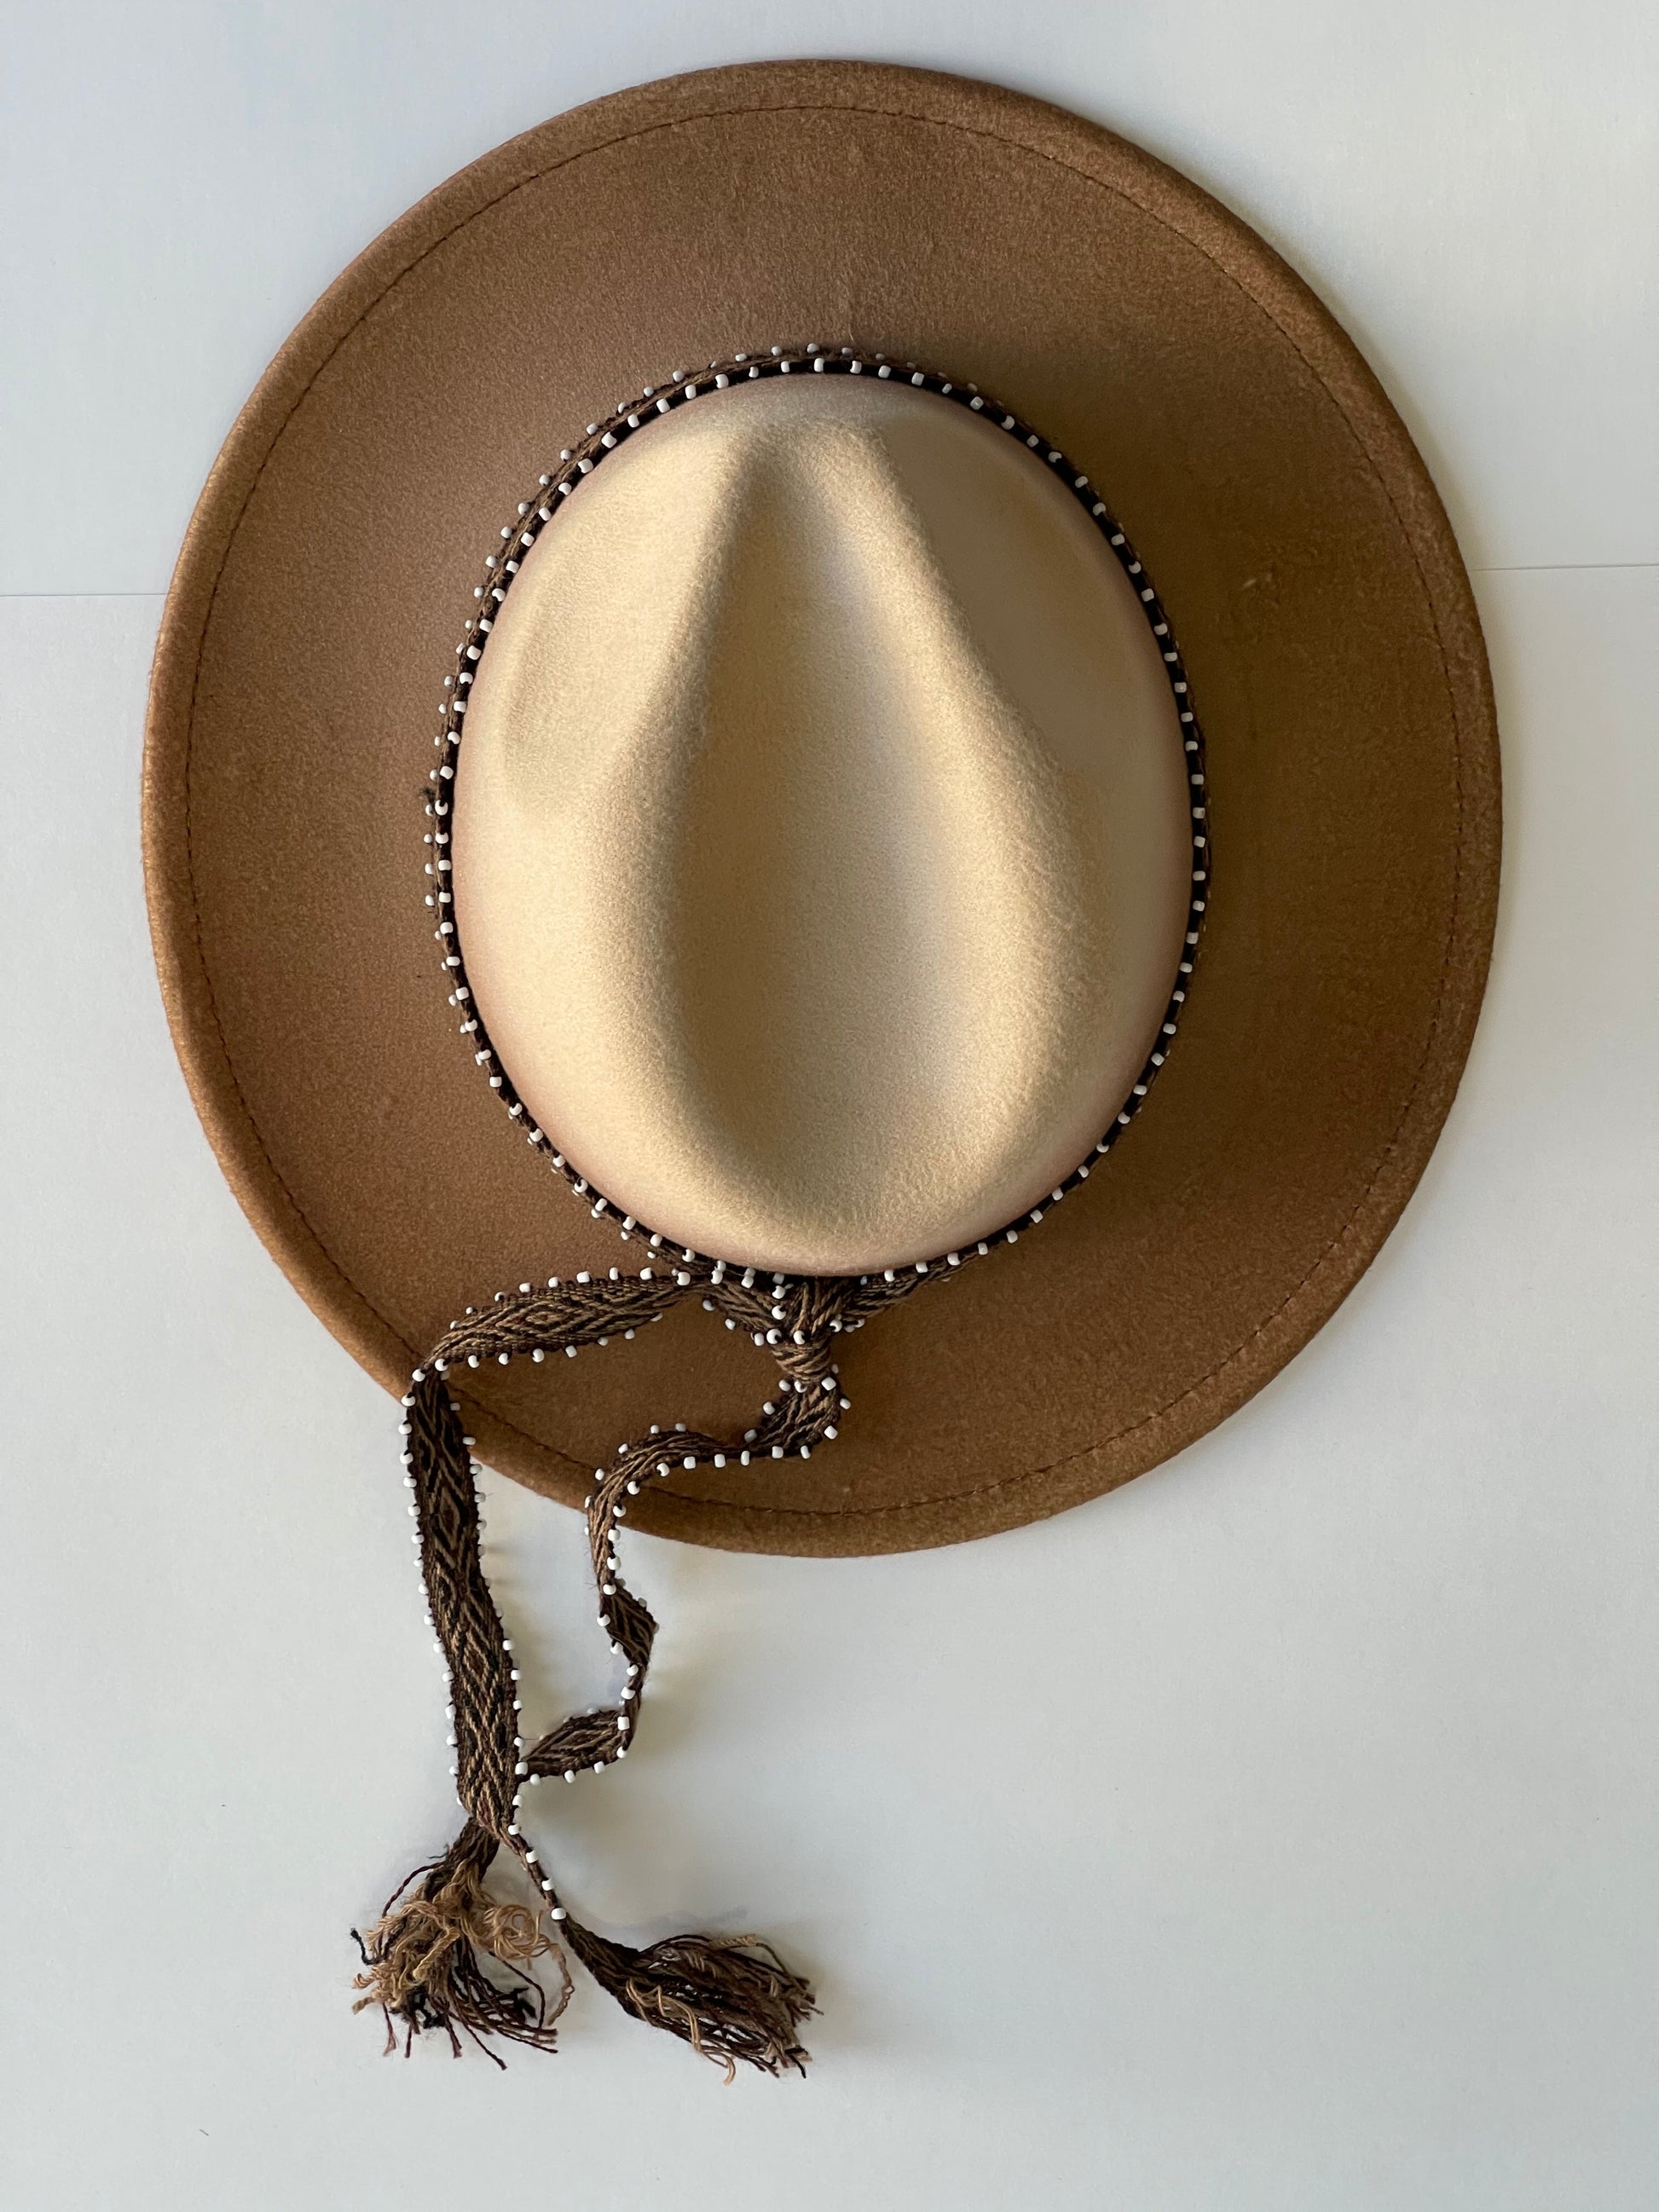 ¡Añade un toque de elegancia y estilo a tu outfit con este hermoso fedora hat en color moca, hecho en Perú! Este sombrero es imprescindible para cualquier amante de la moda, y su diseño de color fade lo hace único y original.